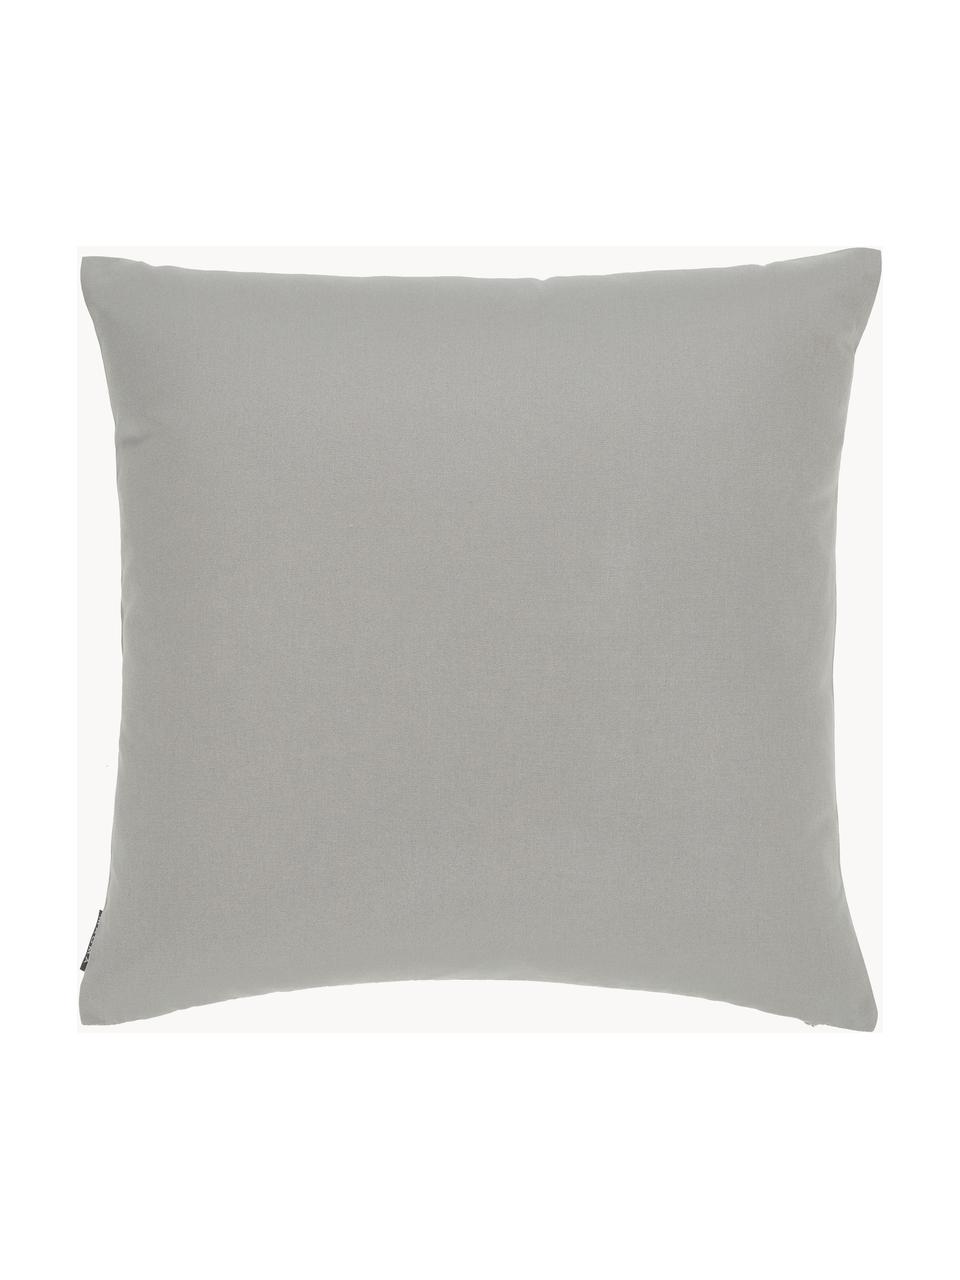 Poszewka na poduszkę zewnętrzną Blopp, Dralon (100% poliakryl), Jasny szary, S 60 x D 60 cm